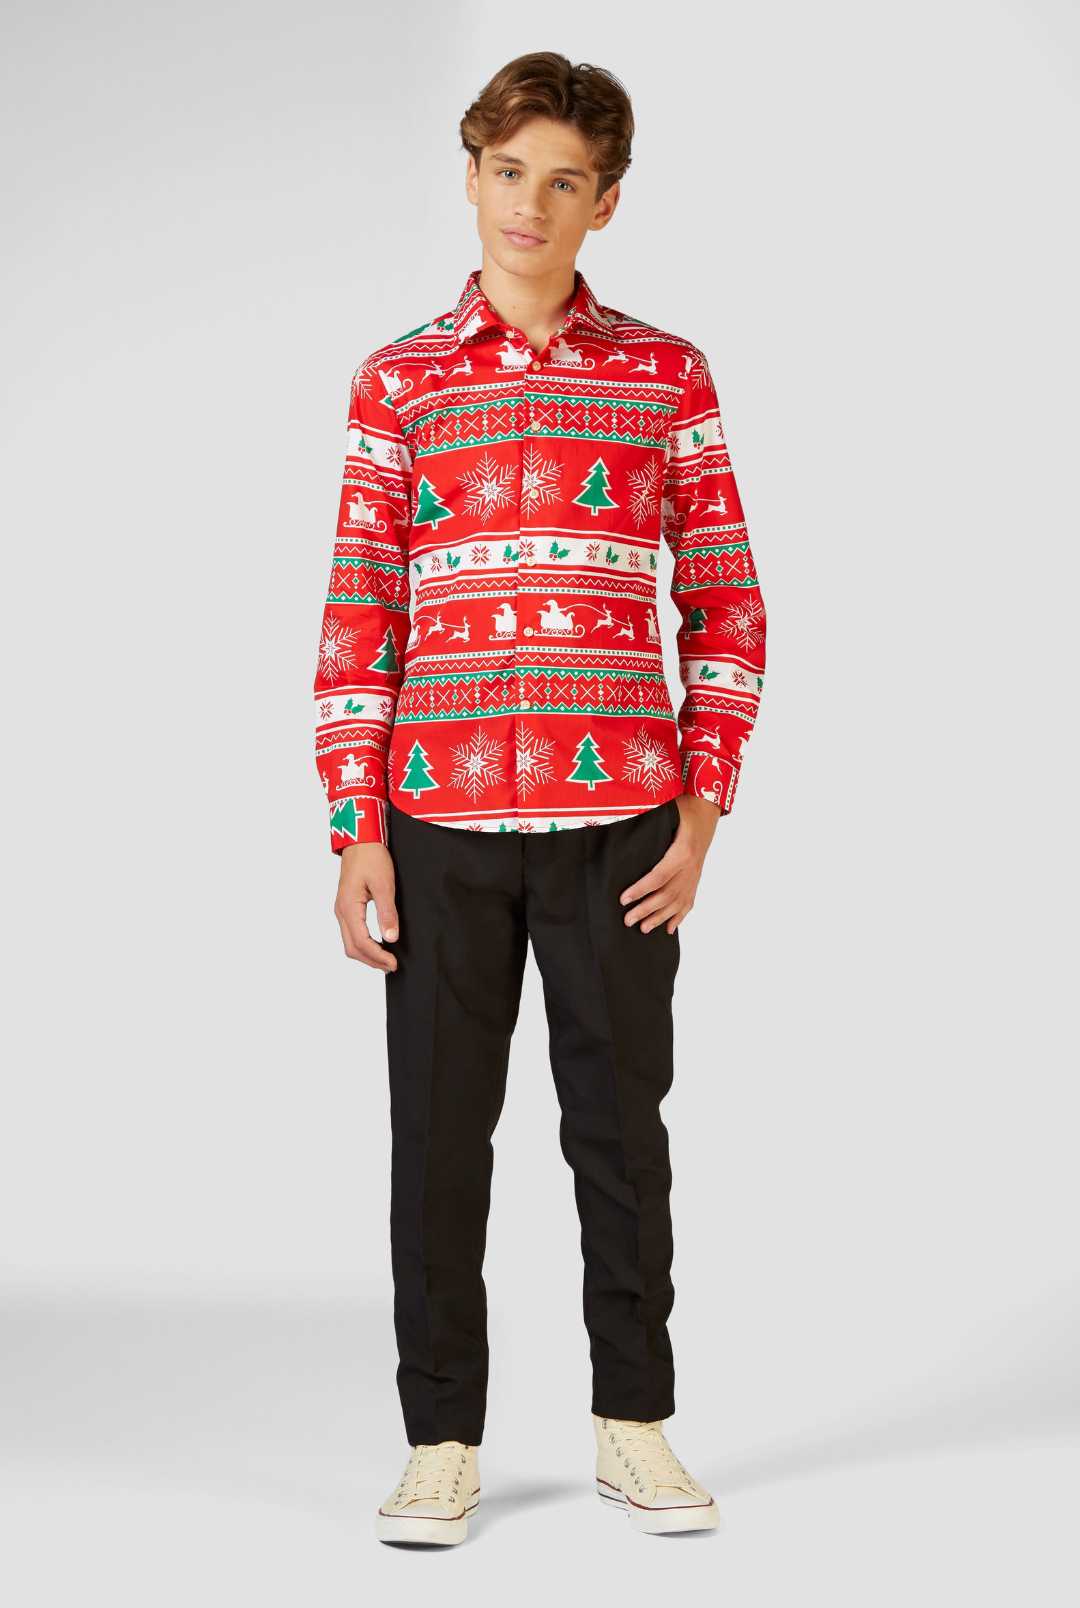 Teen Boys Shirt Winter Wonderland | Christmas Shirt for Teens | OppoSuits